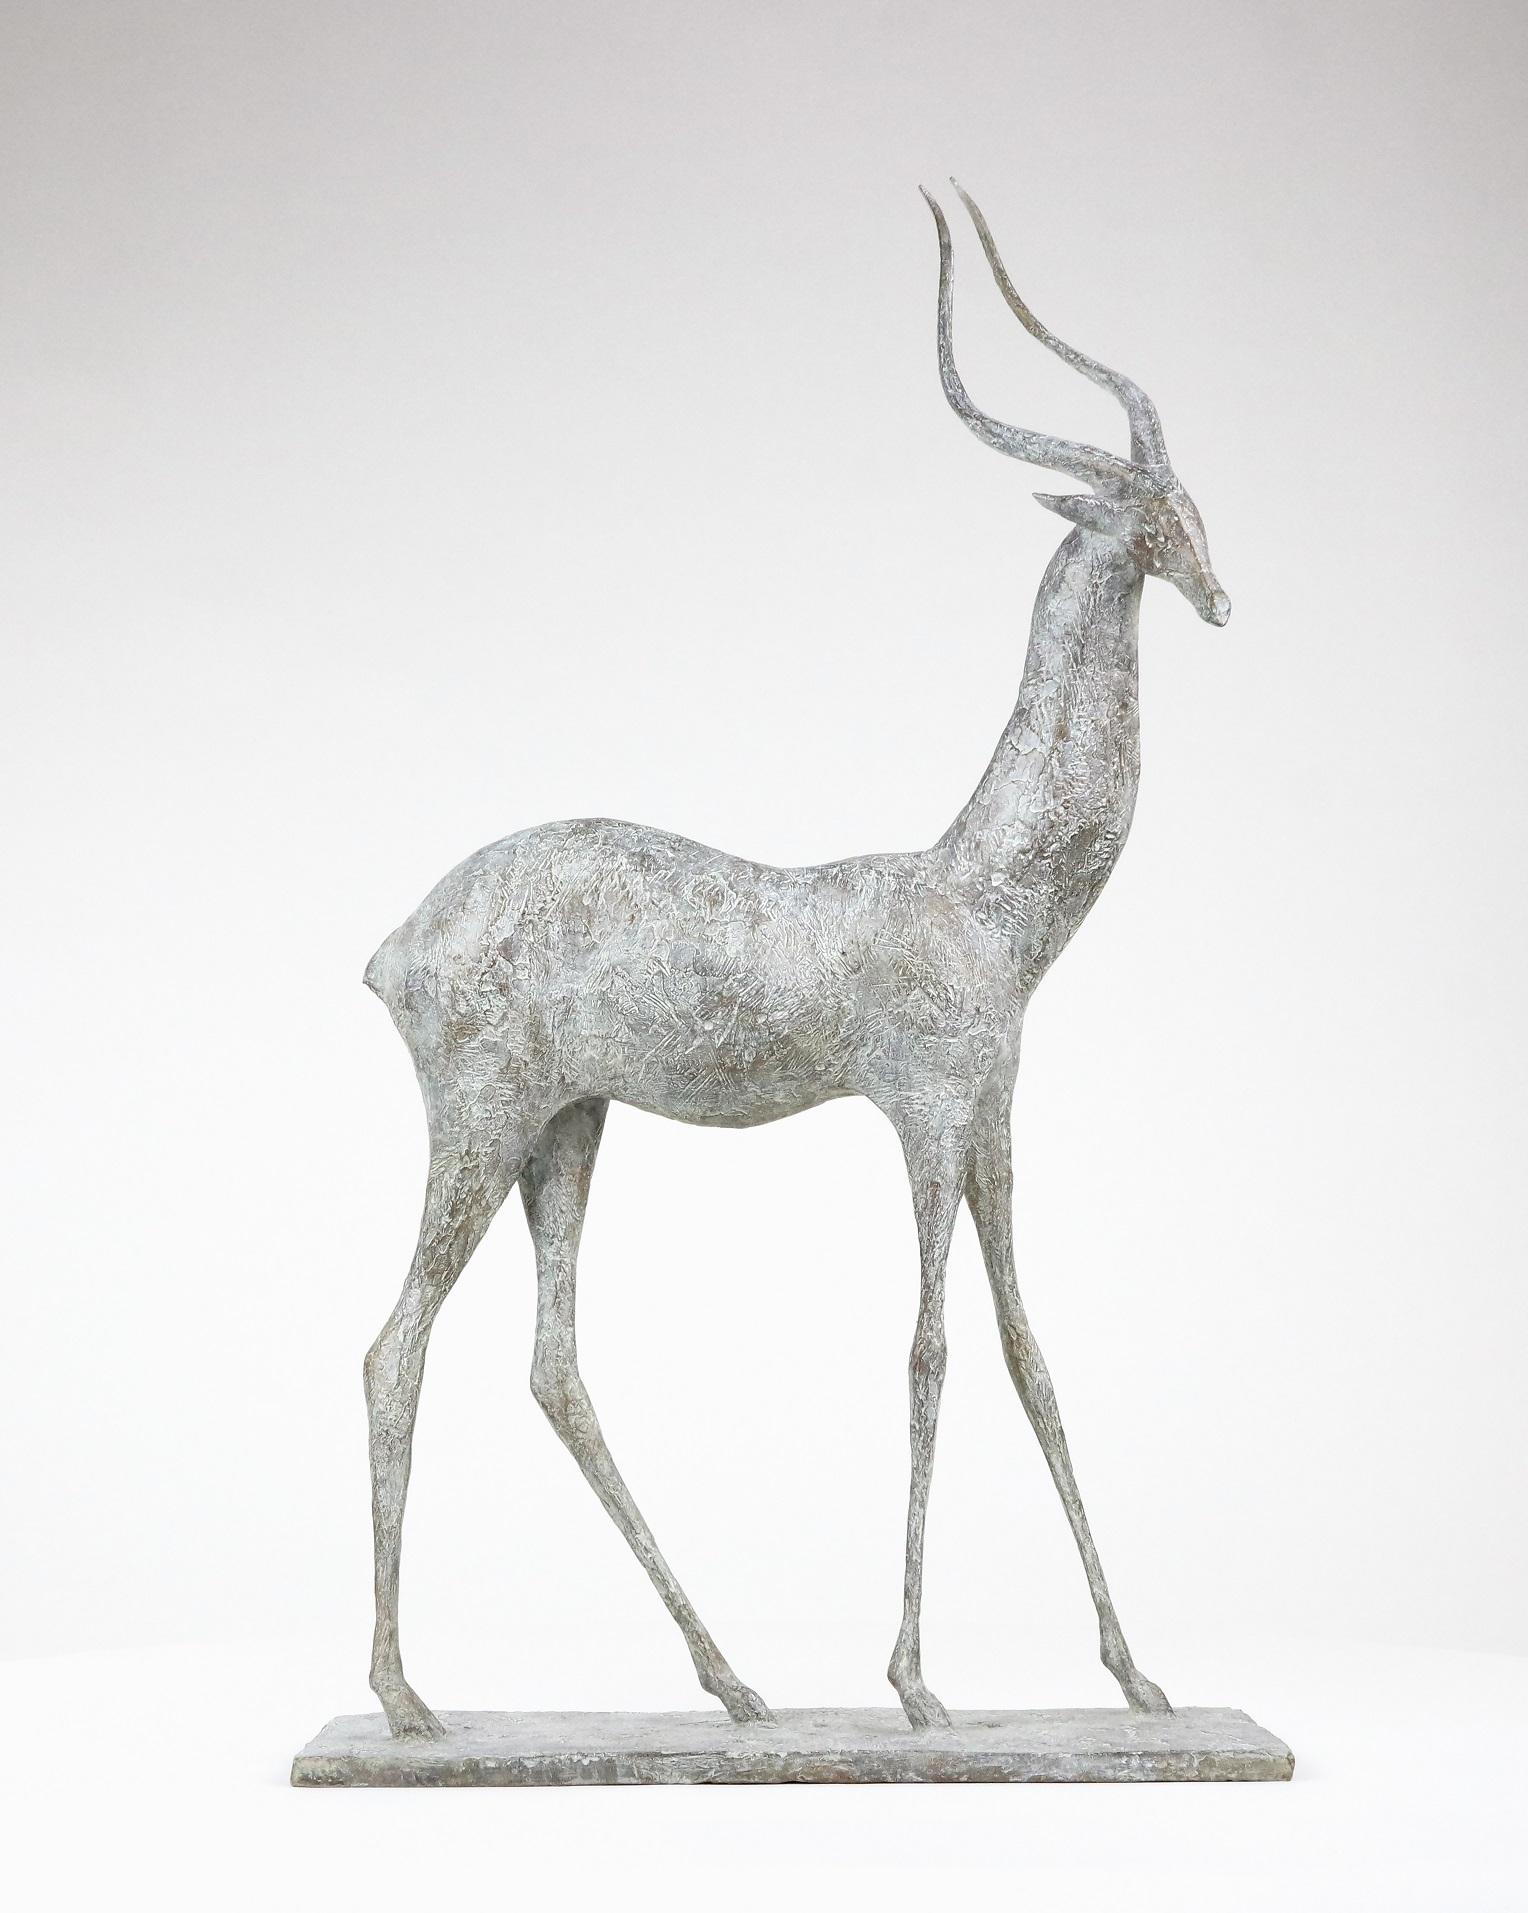 Gazelle I ist eine Bronzeskulptur des französischen zeitgenössischen Künstlers Pierre Yermia mit folgenden Maßen  70 × 40 × 20 cm (27.6 × 15.7 × 7.9 in). 
Die Skulptur ist signiert und nummeriert, gehört zu einer limitierten Auflage von 8 Exemplaren